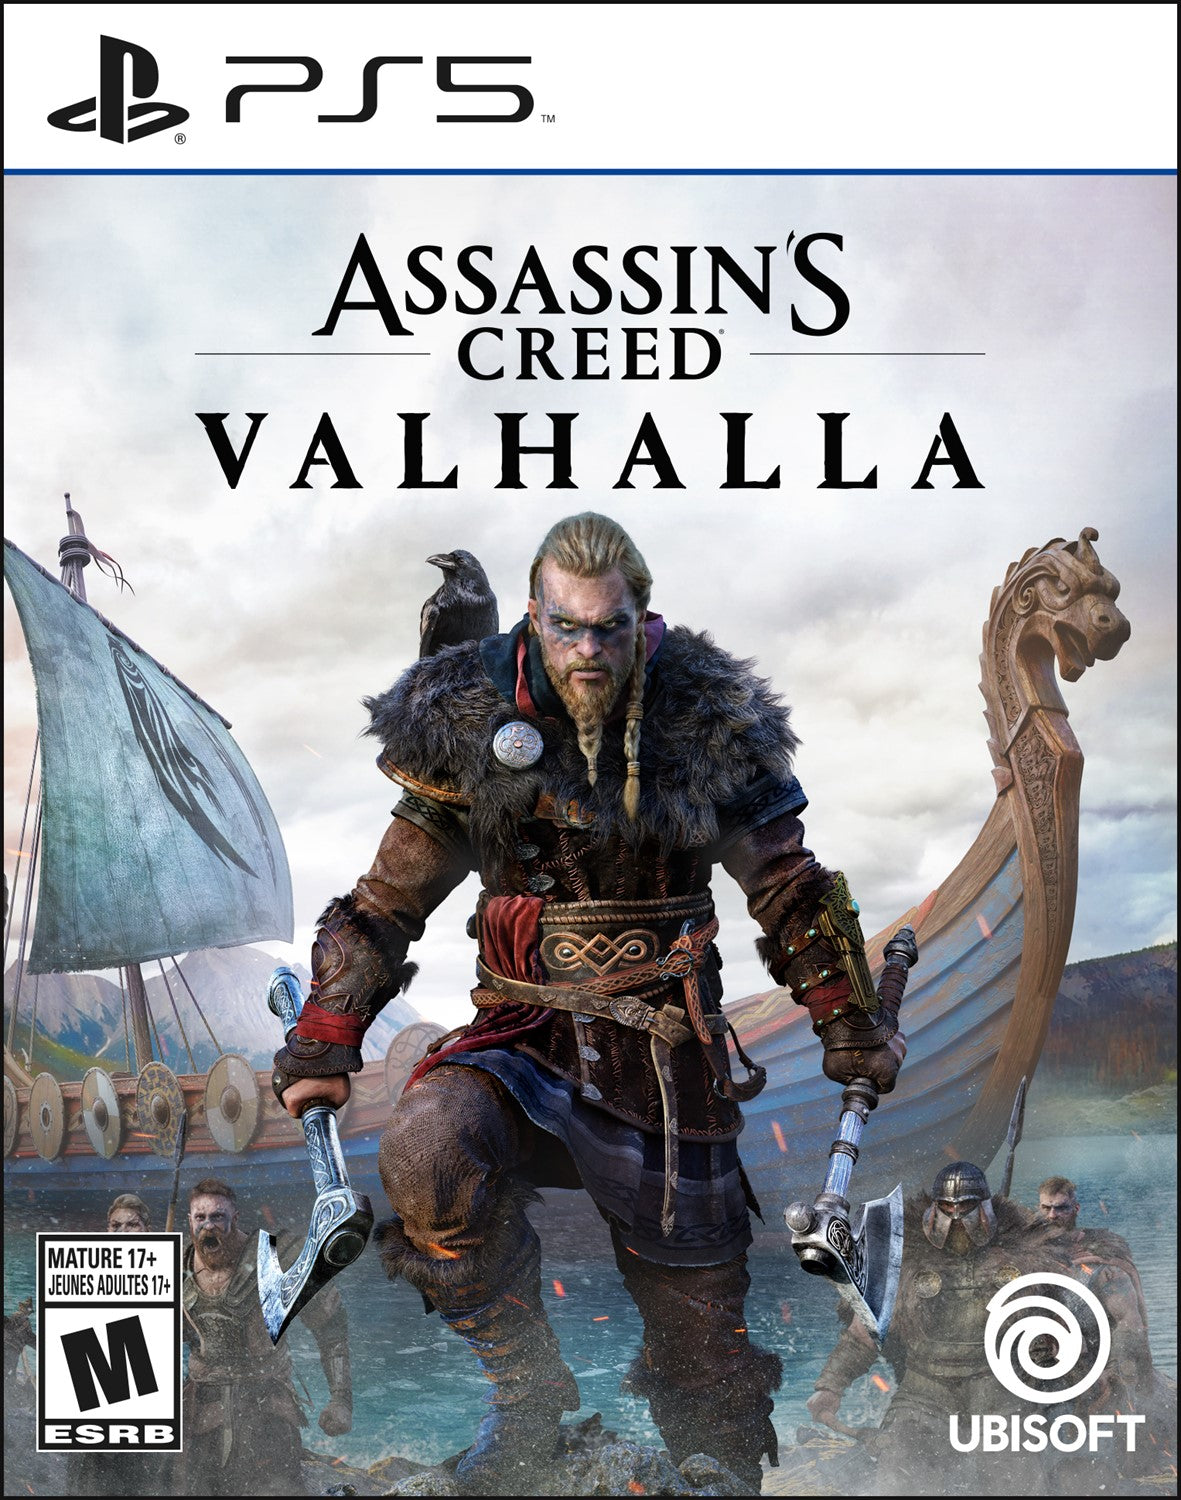 Playstation 5 - Assassins Creed Valhalla